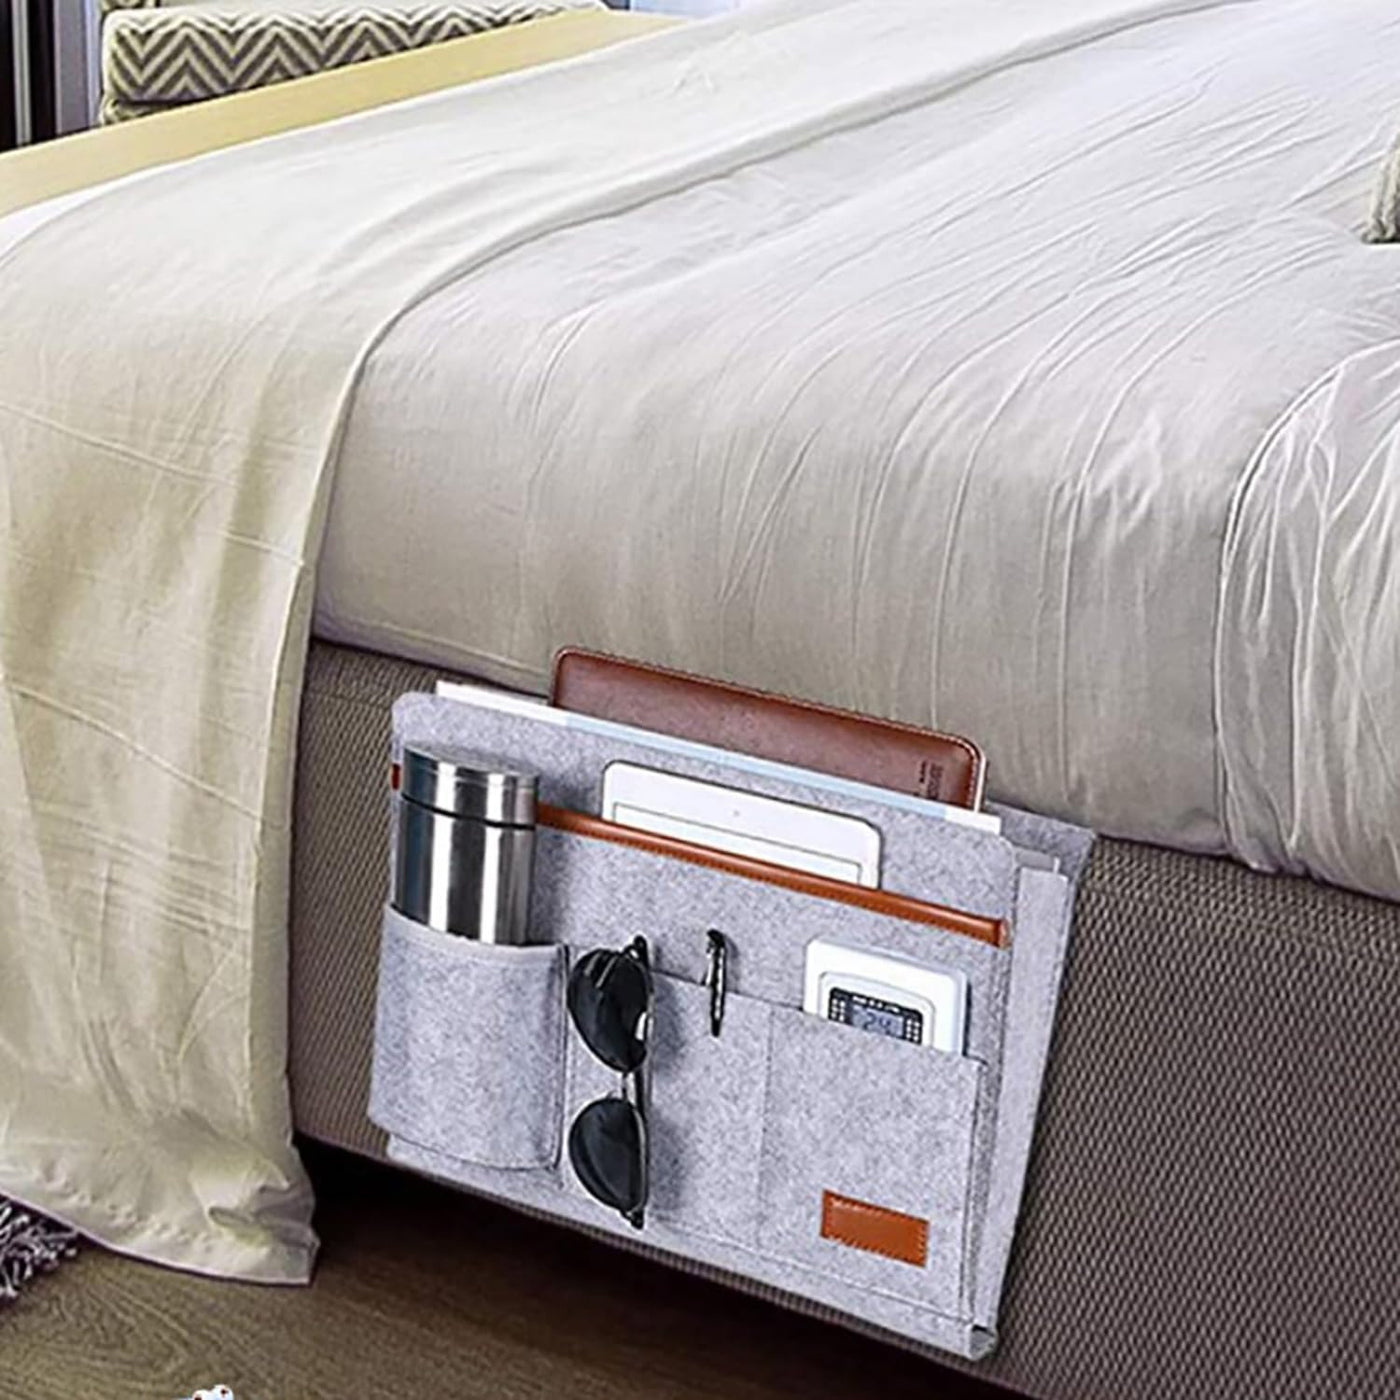 Bedside Caddy, 5 Pockets Remote Control Holder Bed Sofa storage organizer Side Pocket Large (Dark Grey)